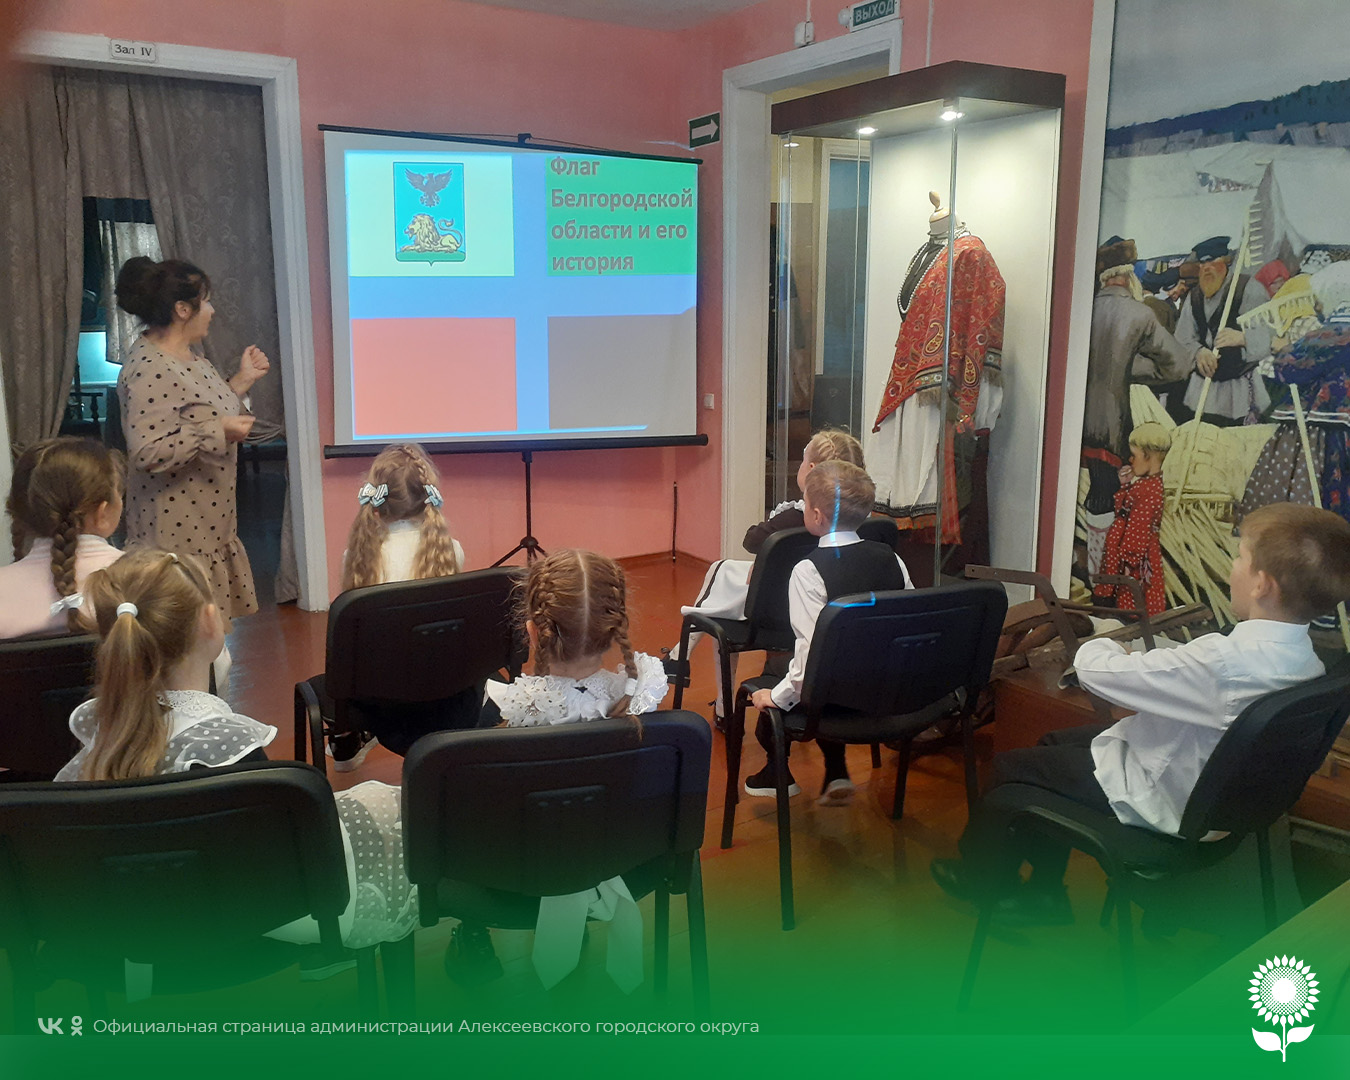 В музее истории села Подсереднее прошла лекция «Флаг – слава Белгородчины», посвящённая Дню флага Белгородской области.